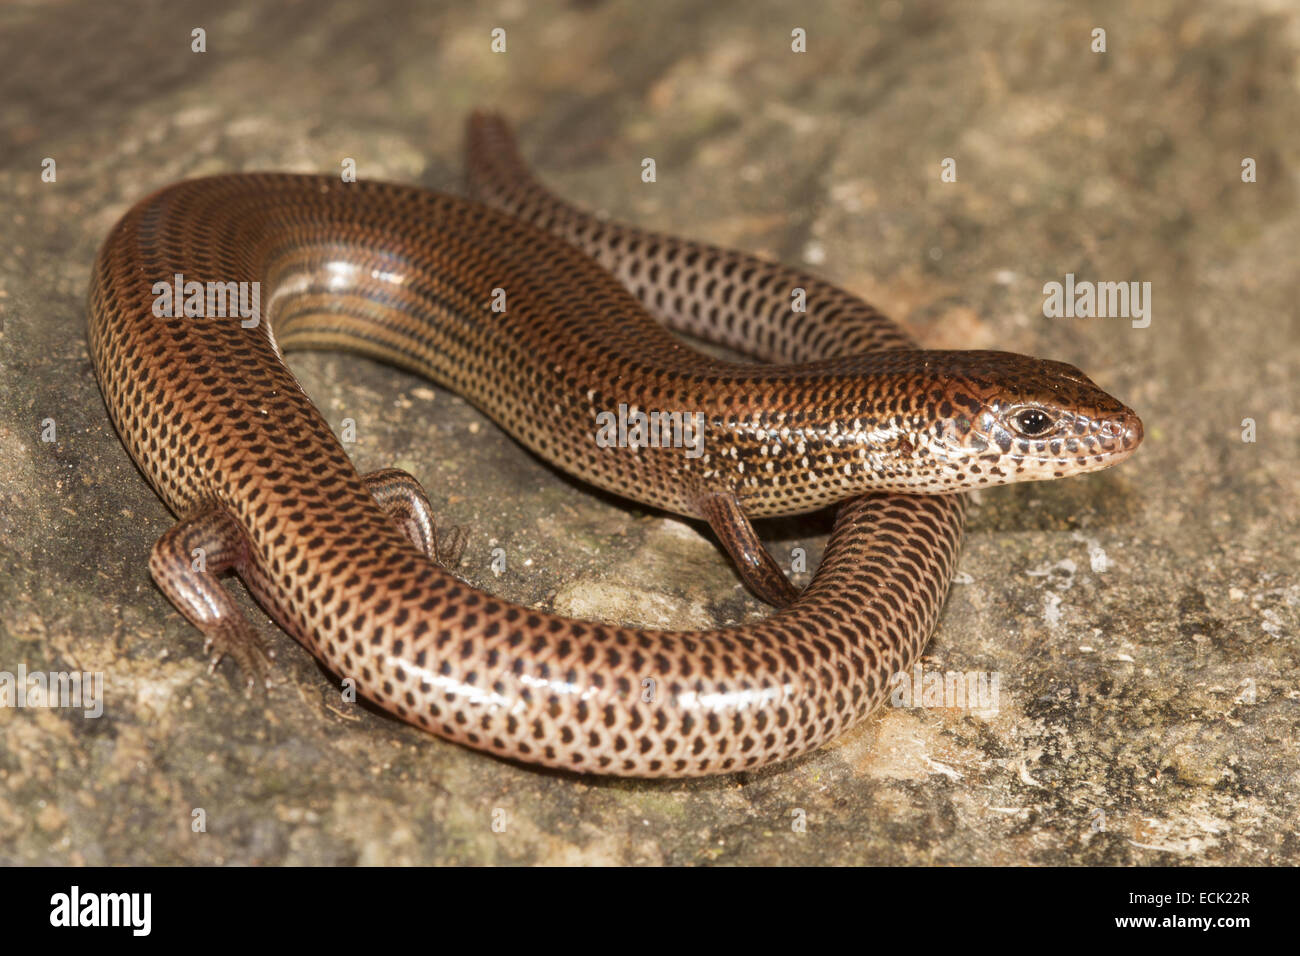 Snake skink Lygosoma sp. Family: Scincidae, Agumbe, Karnataka, India Stock Photo